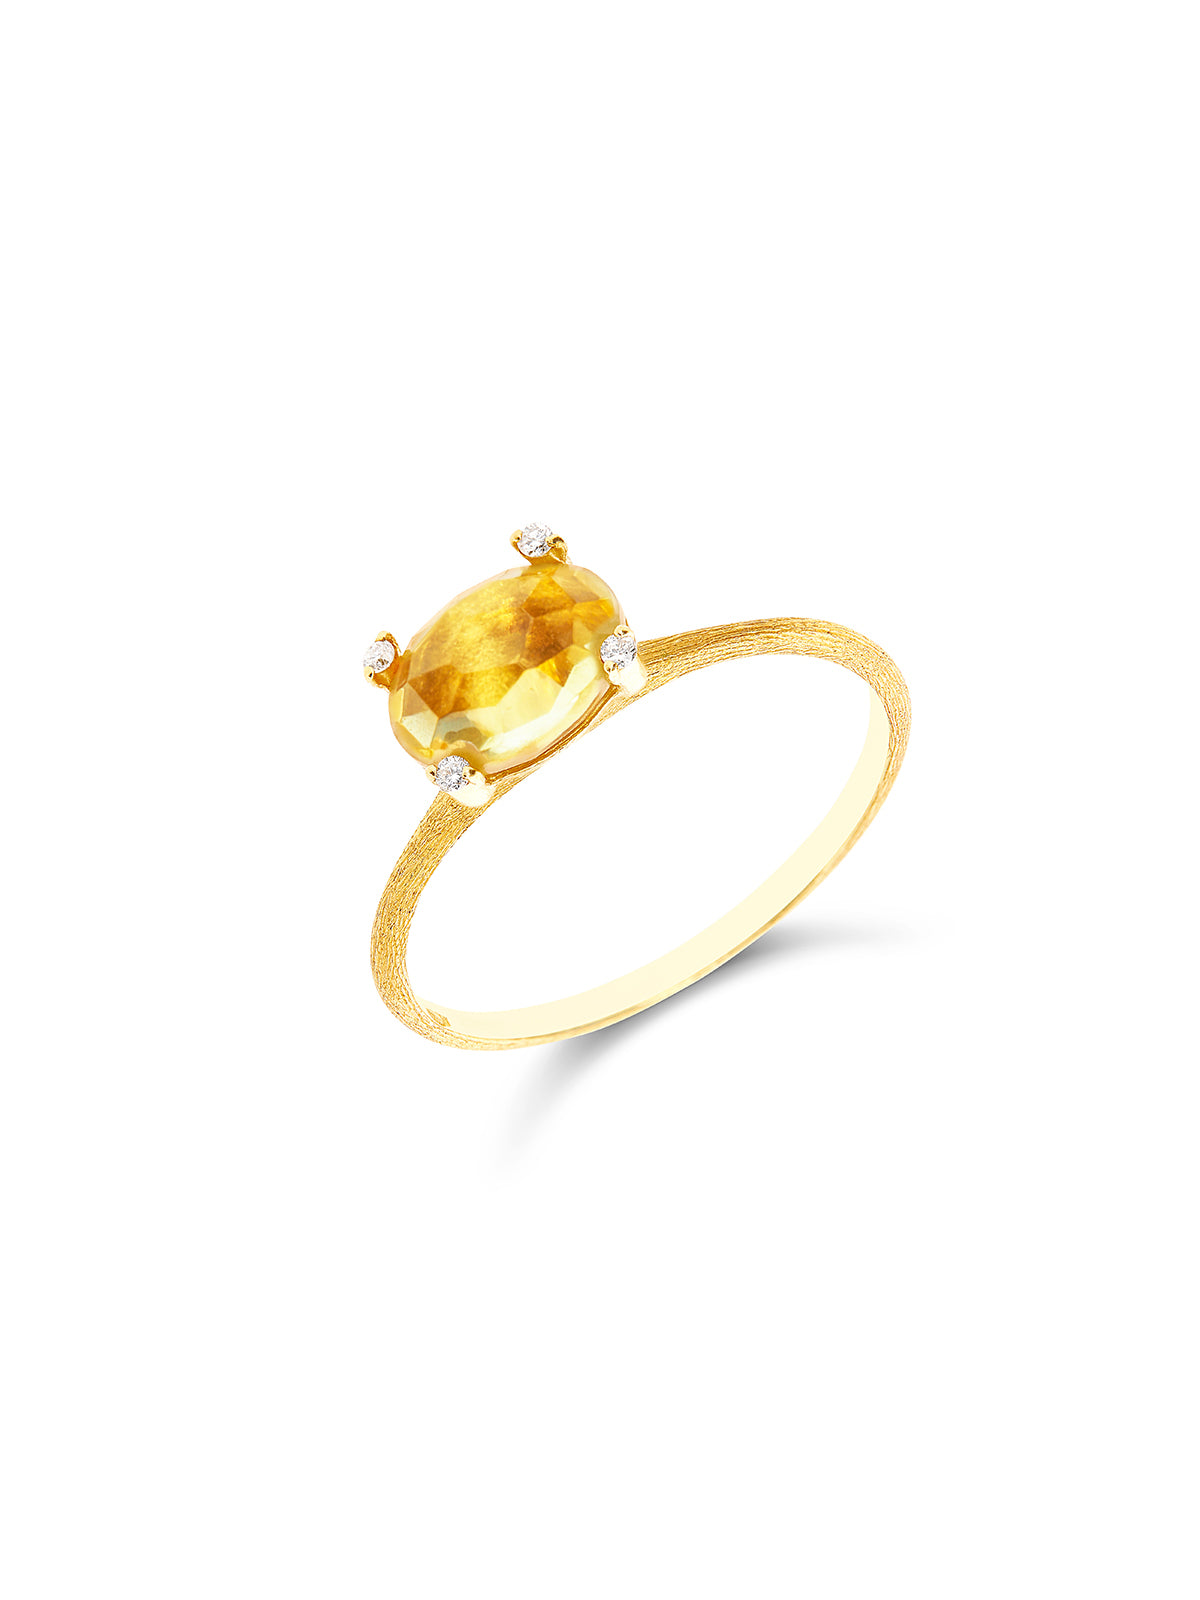 "Ipanema " Gold, Citrine Quartz and Diamonds  Ring